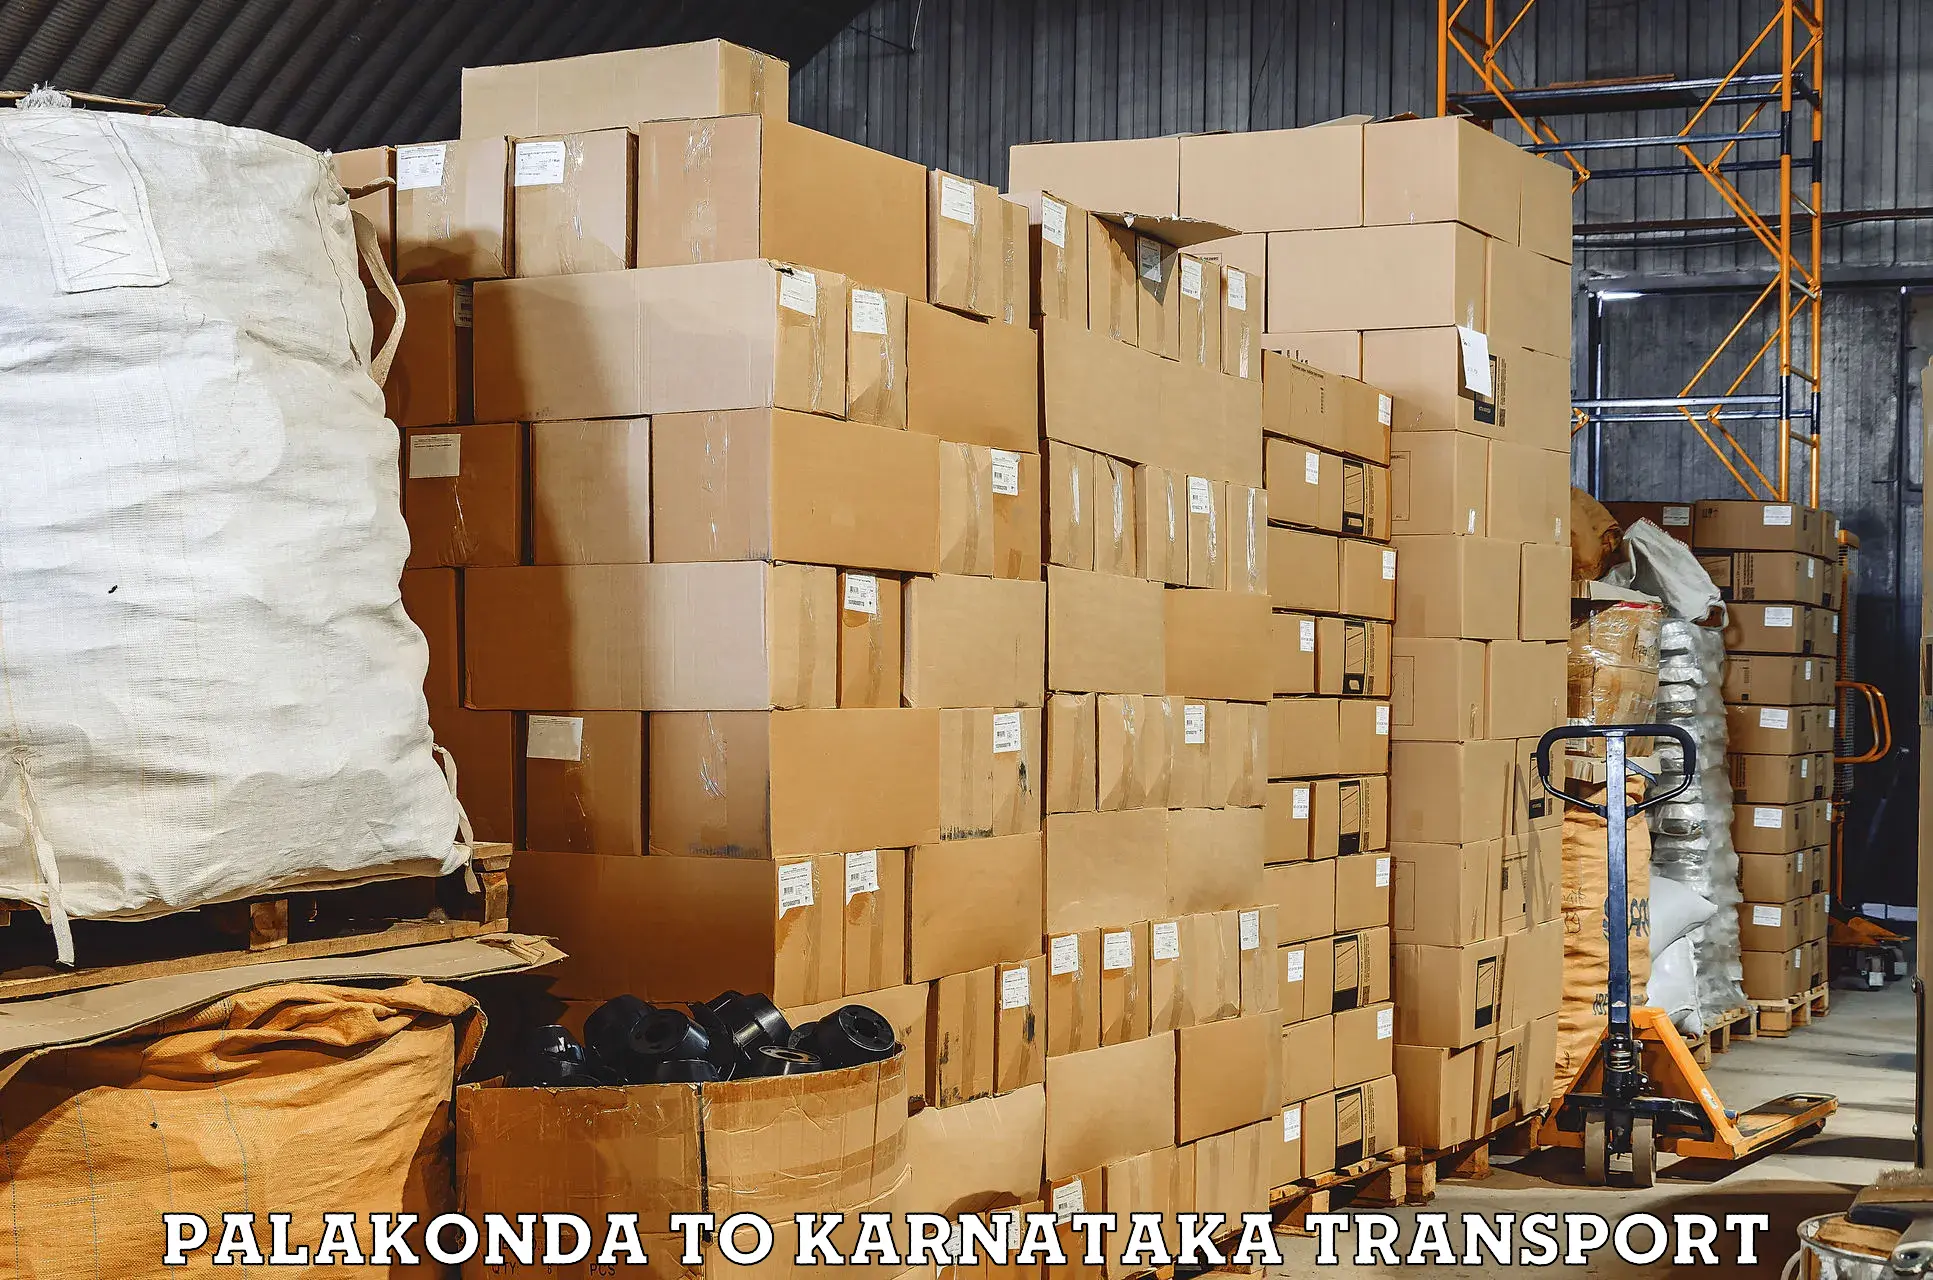 Online transport Palakonda to Karnataka